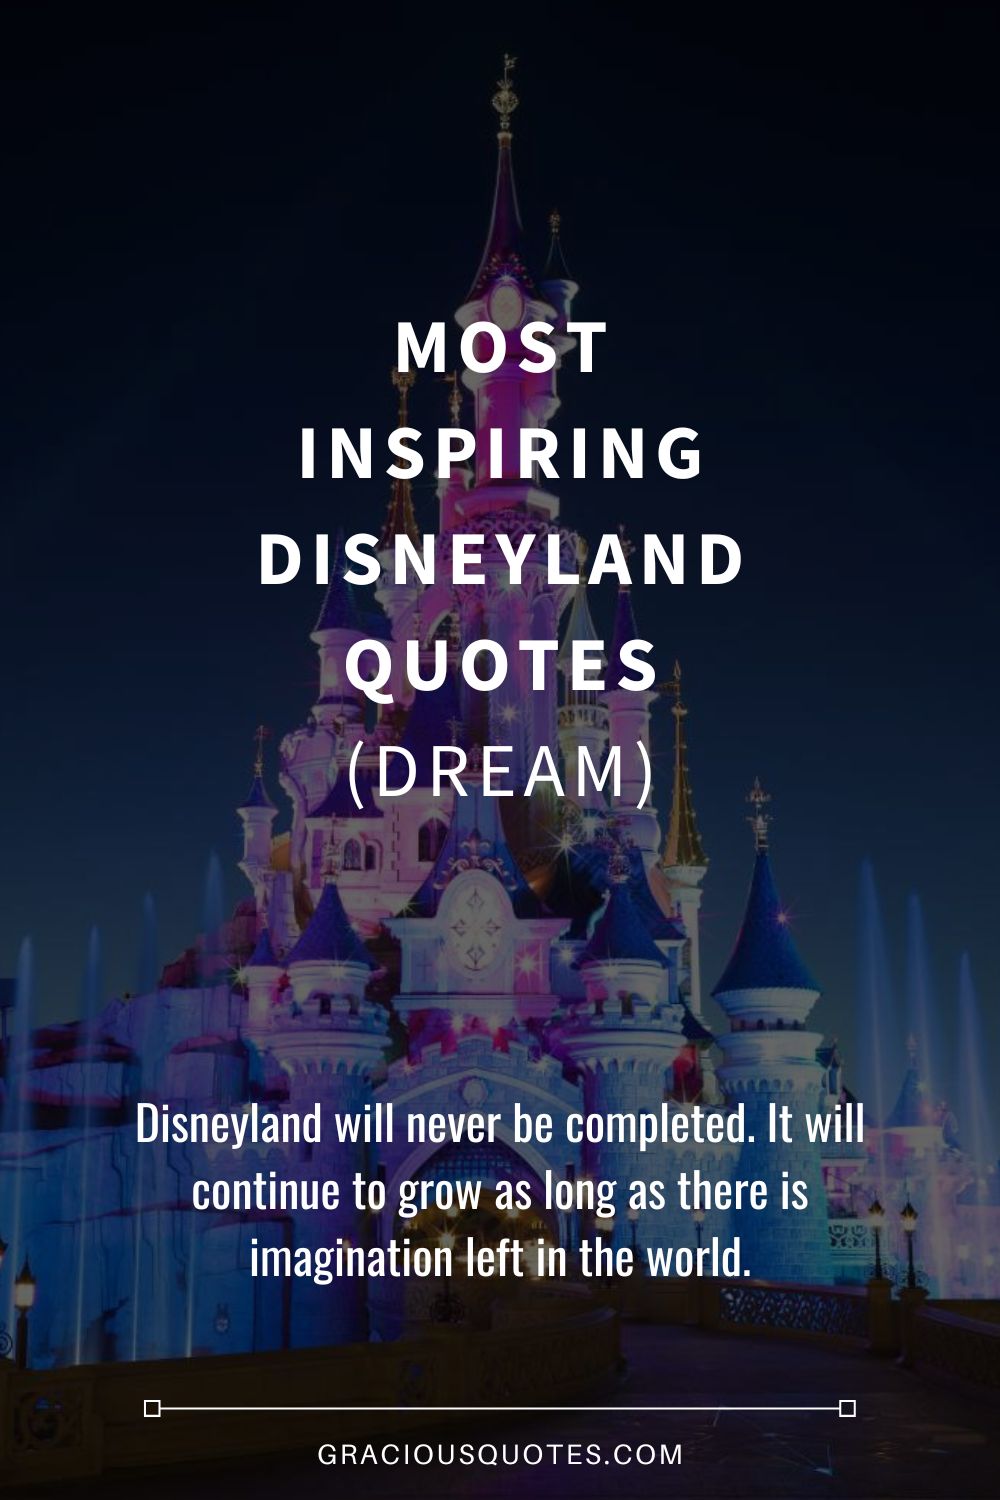 Most Inspiring Disneyland Quotes (DREAM) - Gracious Quotes